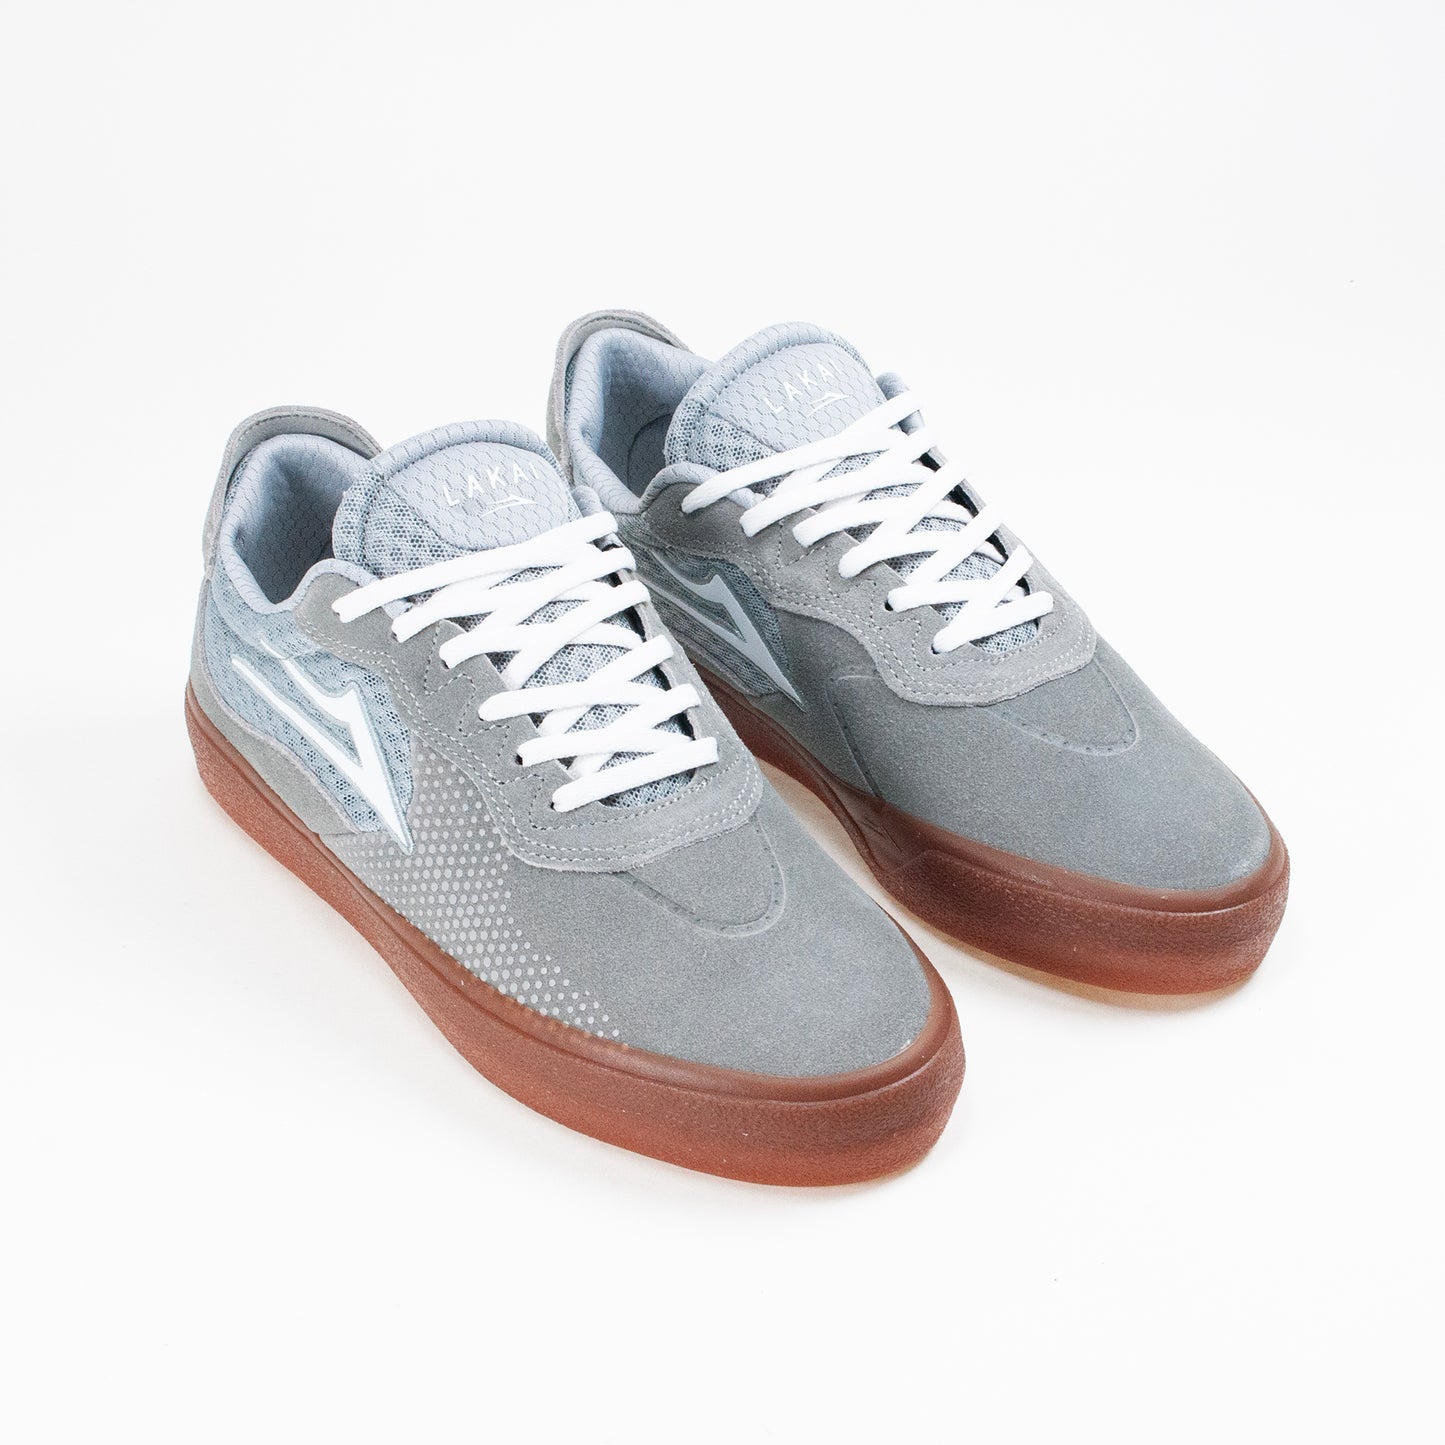 Lakai Essex Shoes - Light Grey/ Gum - Prime Delux Store